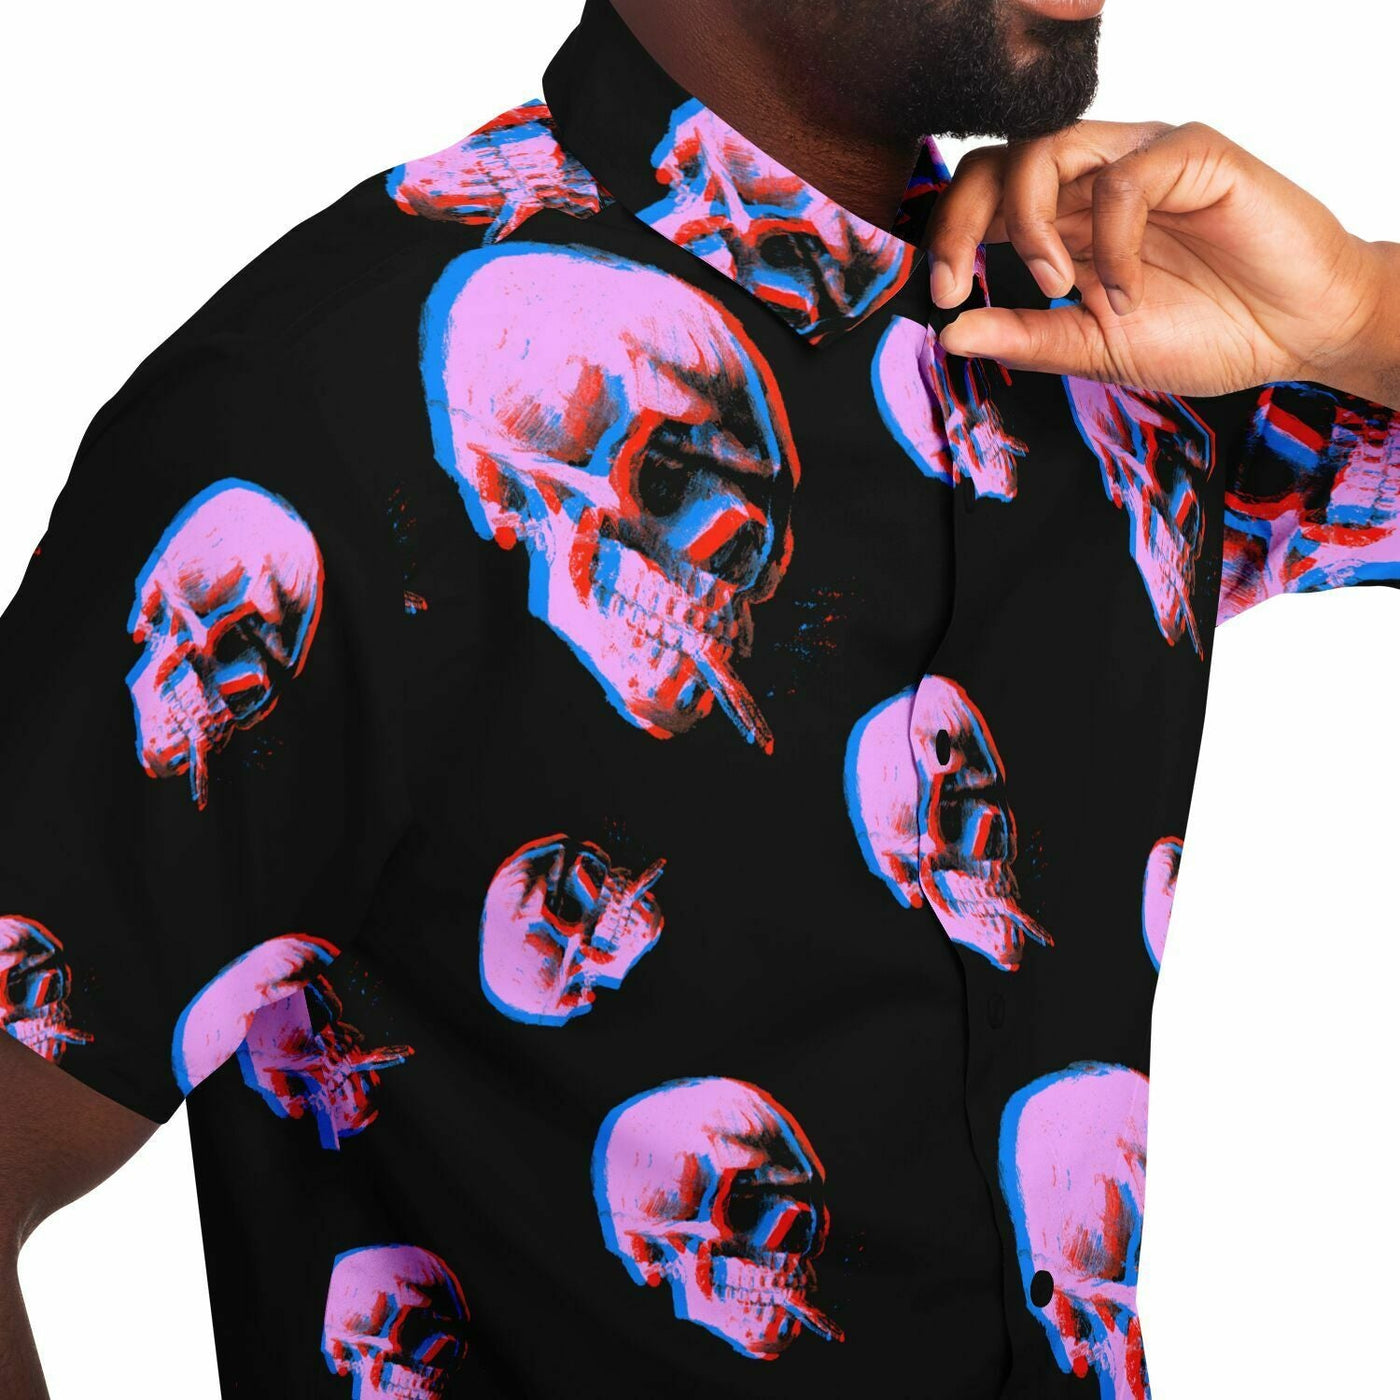 Skull With Burning Cigarette - Van Gogh Tribute | Art Freak Pop short Sleeves Shirt